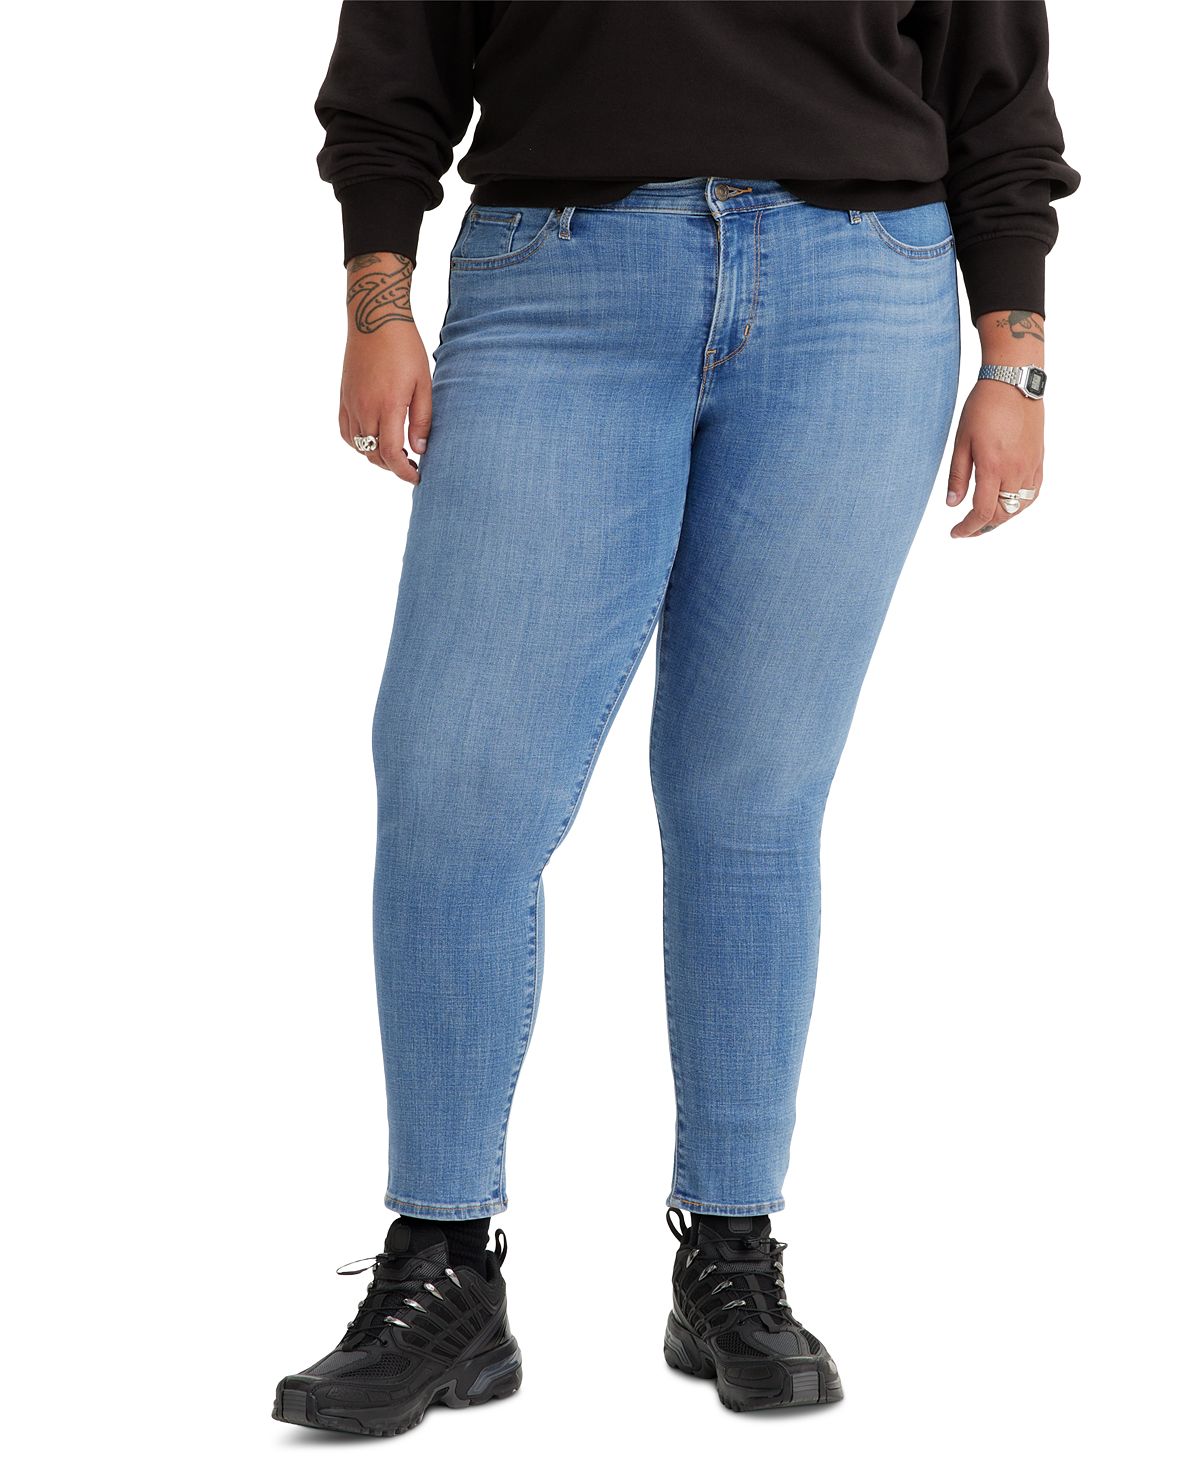 Модные джинсы скинни размера 711 больших размеров Levi's sheriff